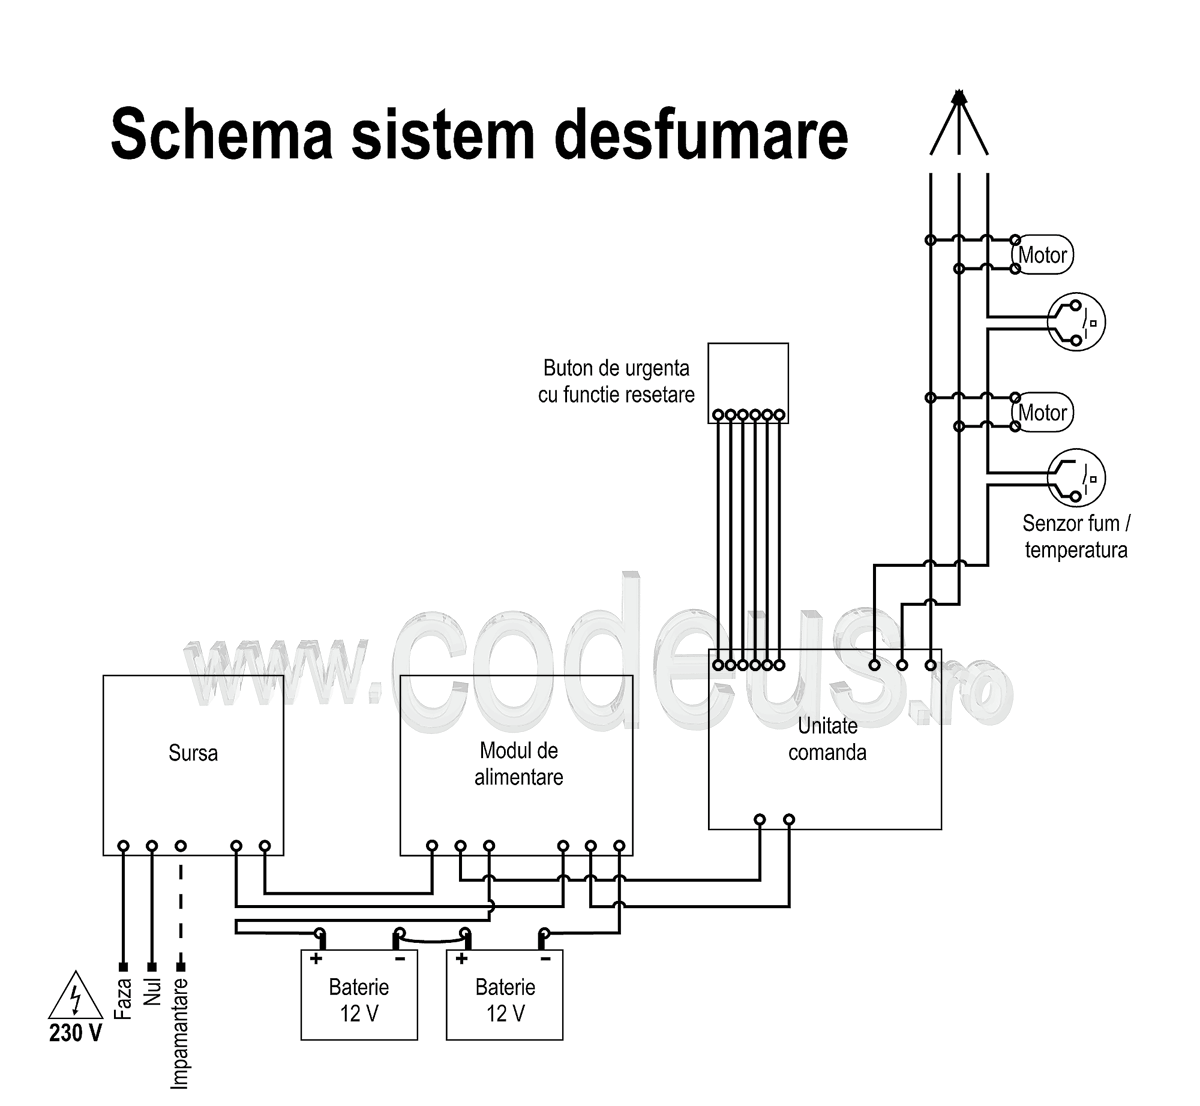 Schema electrica sistem desfumare cu senzori, sursa, baterii, actuatoare electrice (ferestre desfumare, trape, buton de urgenta cu functie de resetare